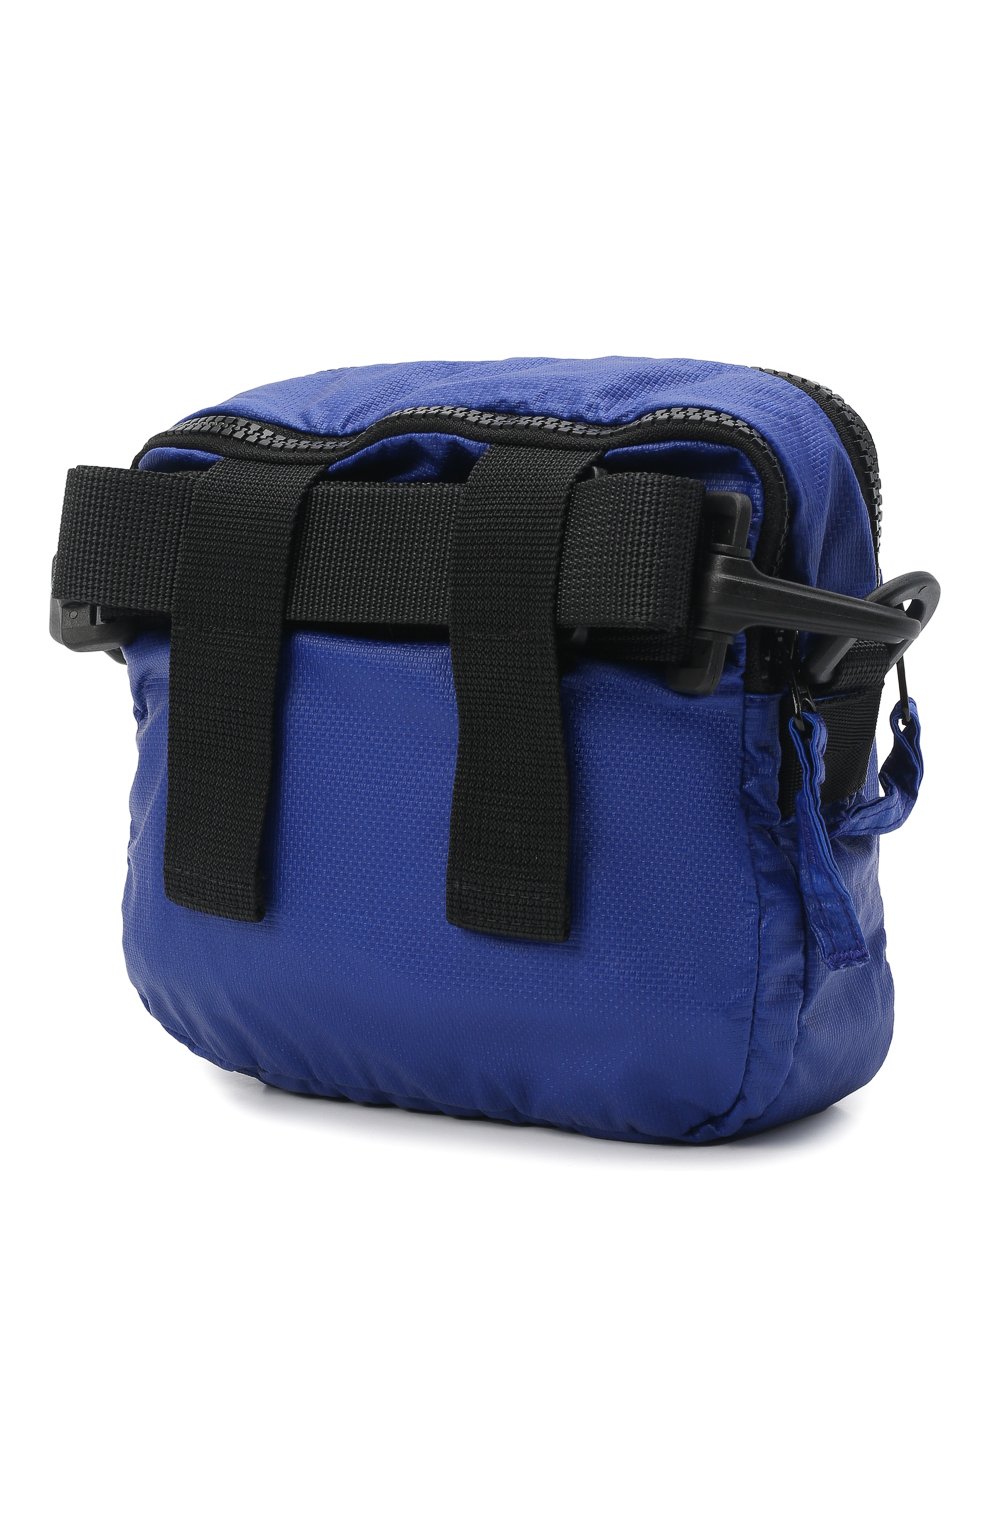 Мужская текстильная сумка STONE ISLAND синего цвета, арт. 751590270 | Фото 4 (Размер: mini; Ремень/цепочка: На ремешке; Материал: Текстиль)